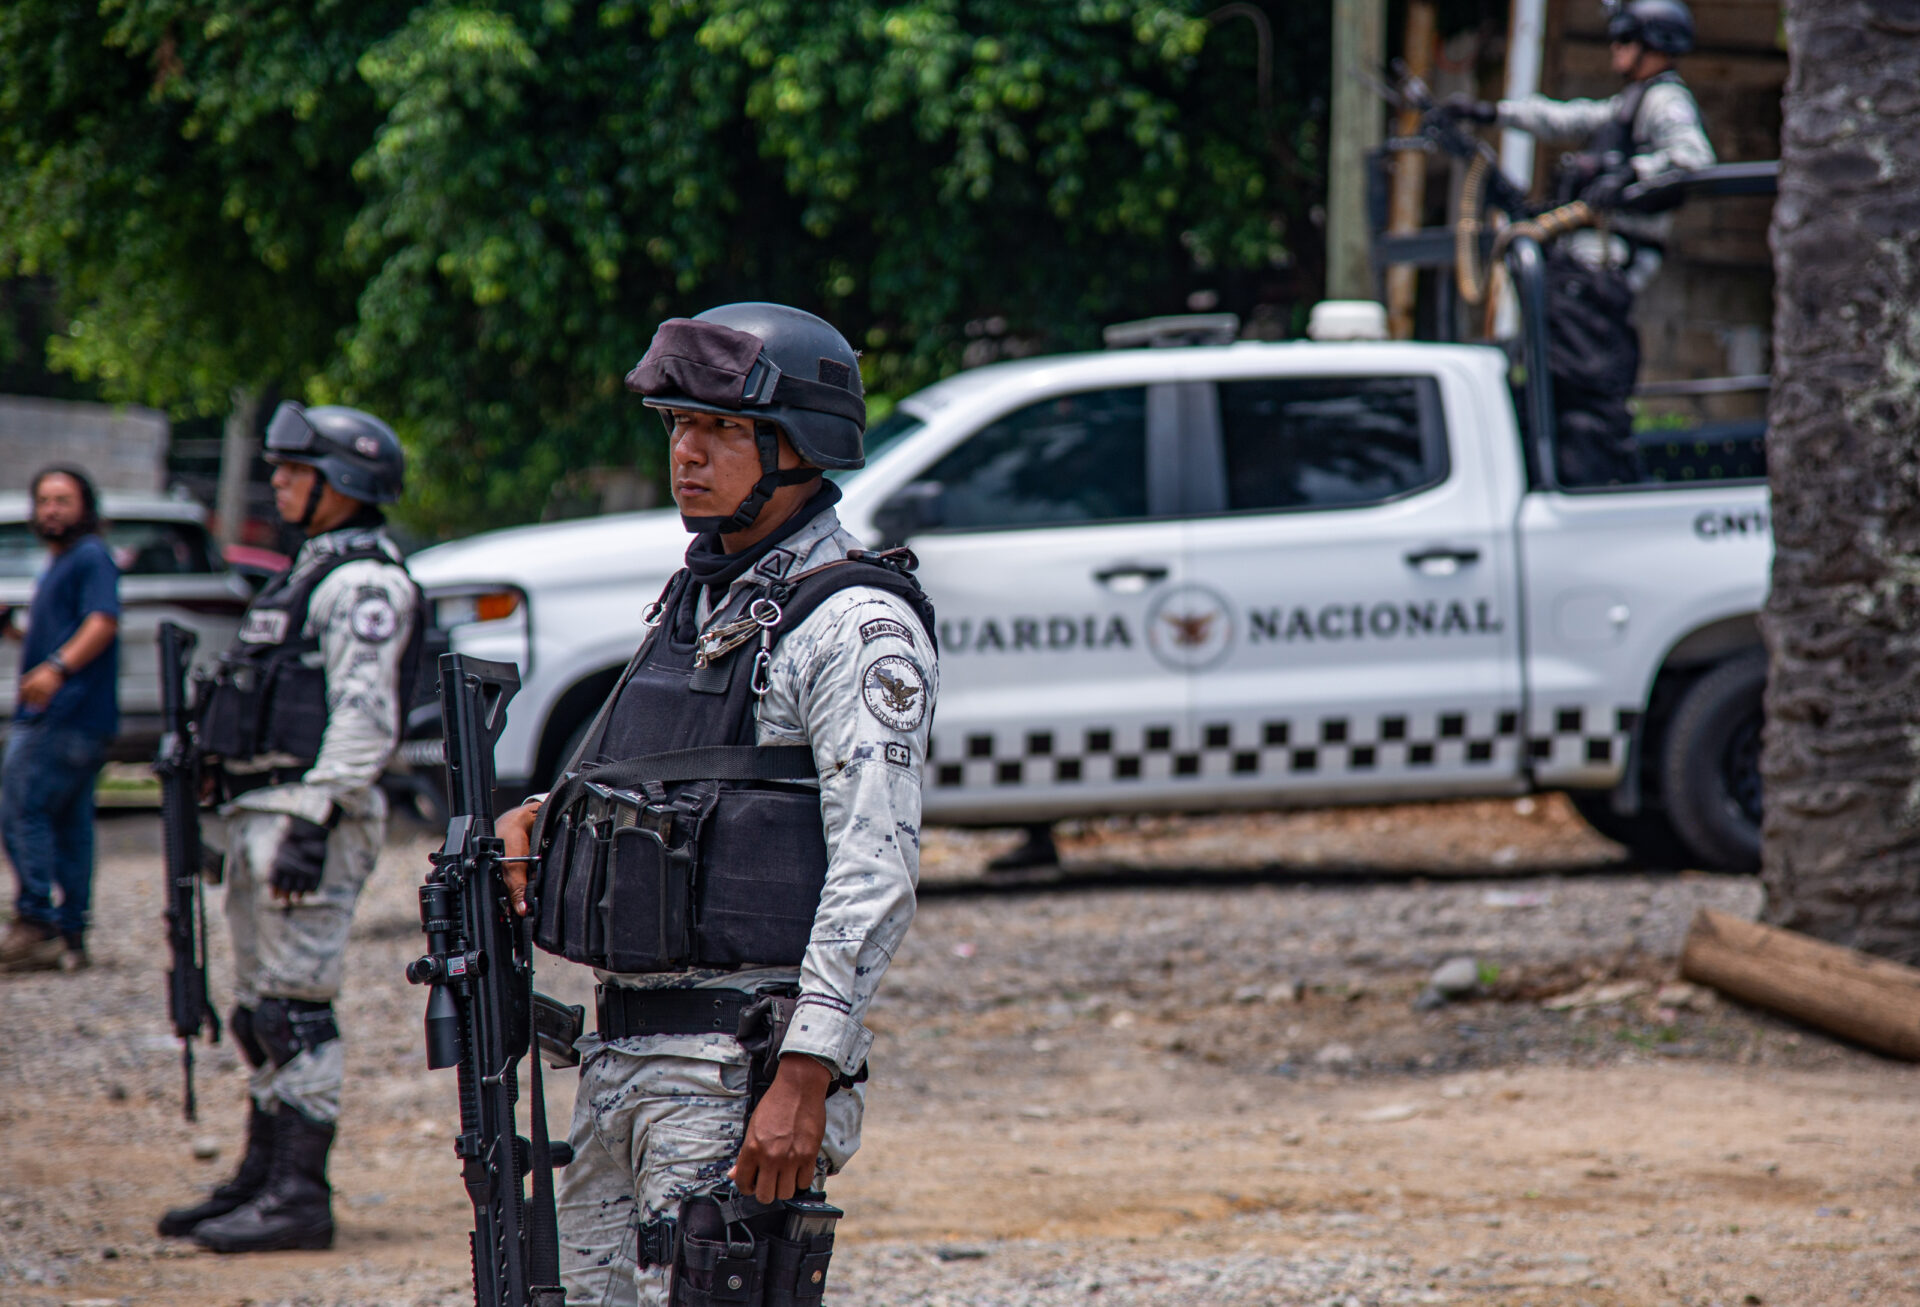 Dan 20 años de cárcel a hombre por homicidio contra elemento de la GN en Guanajuato